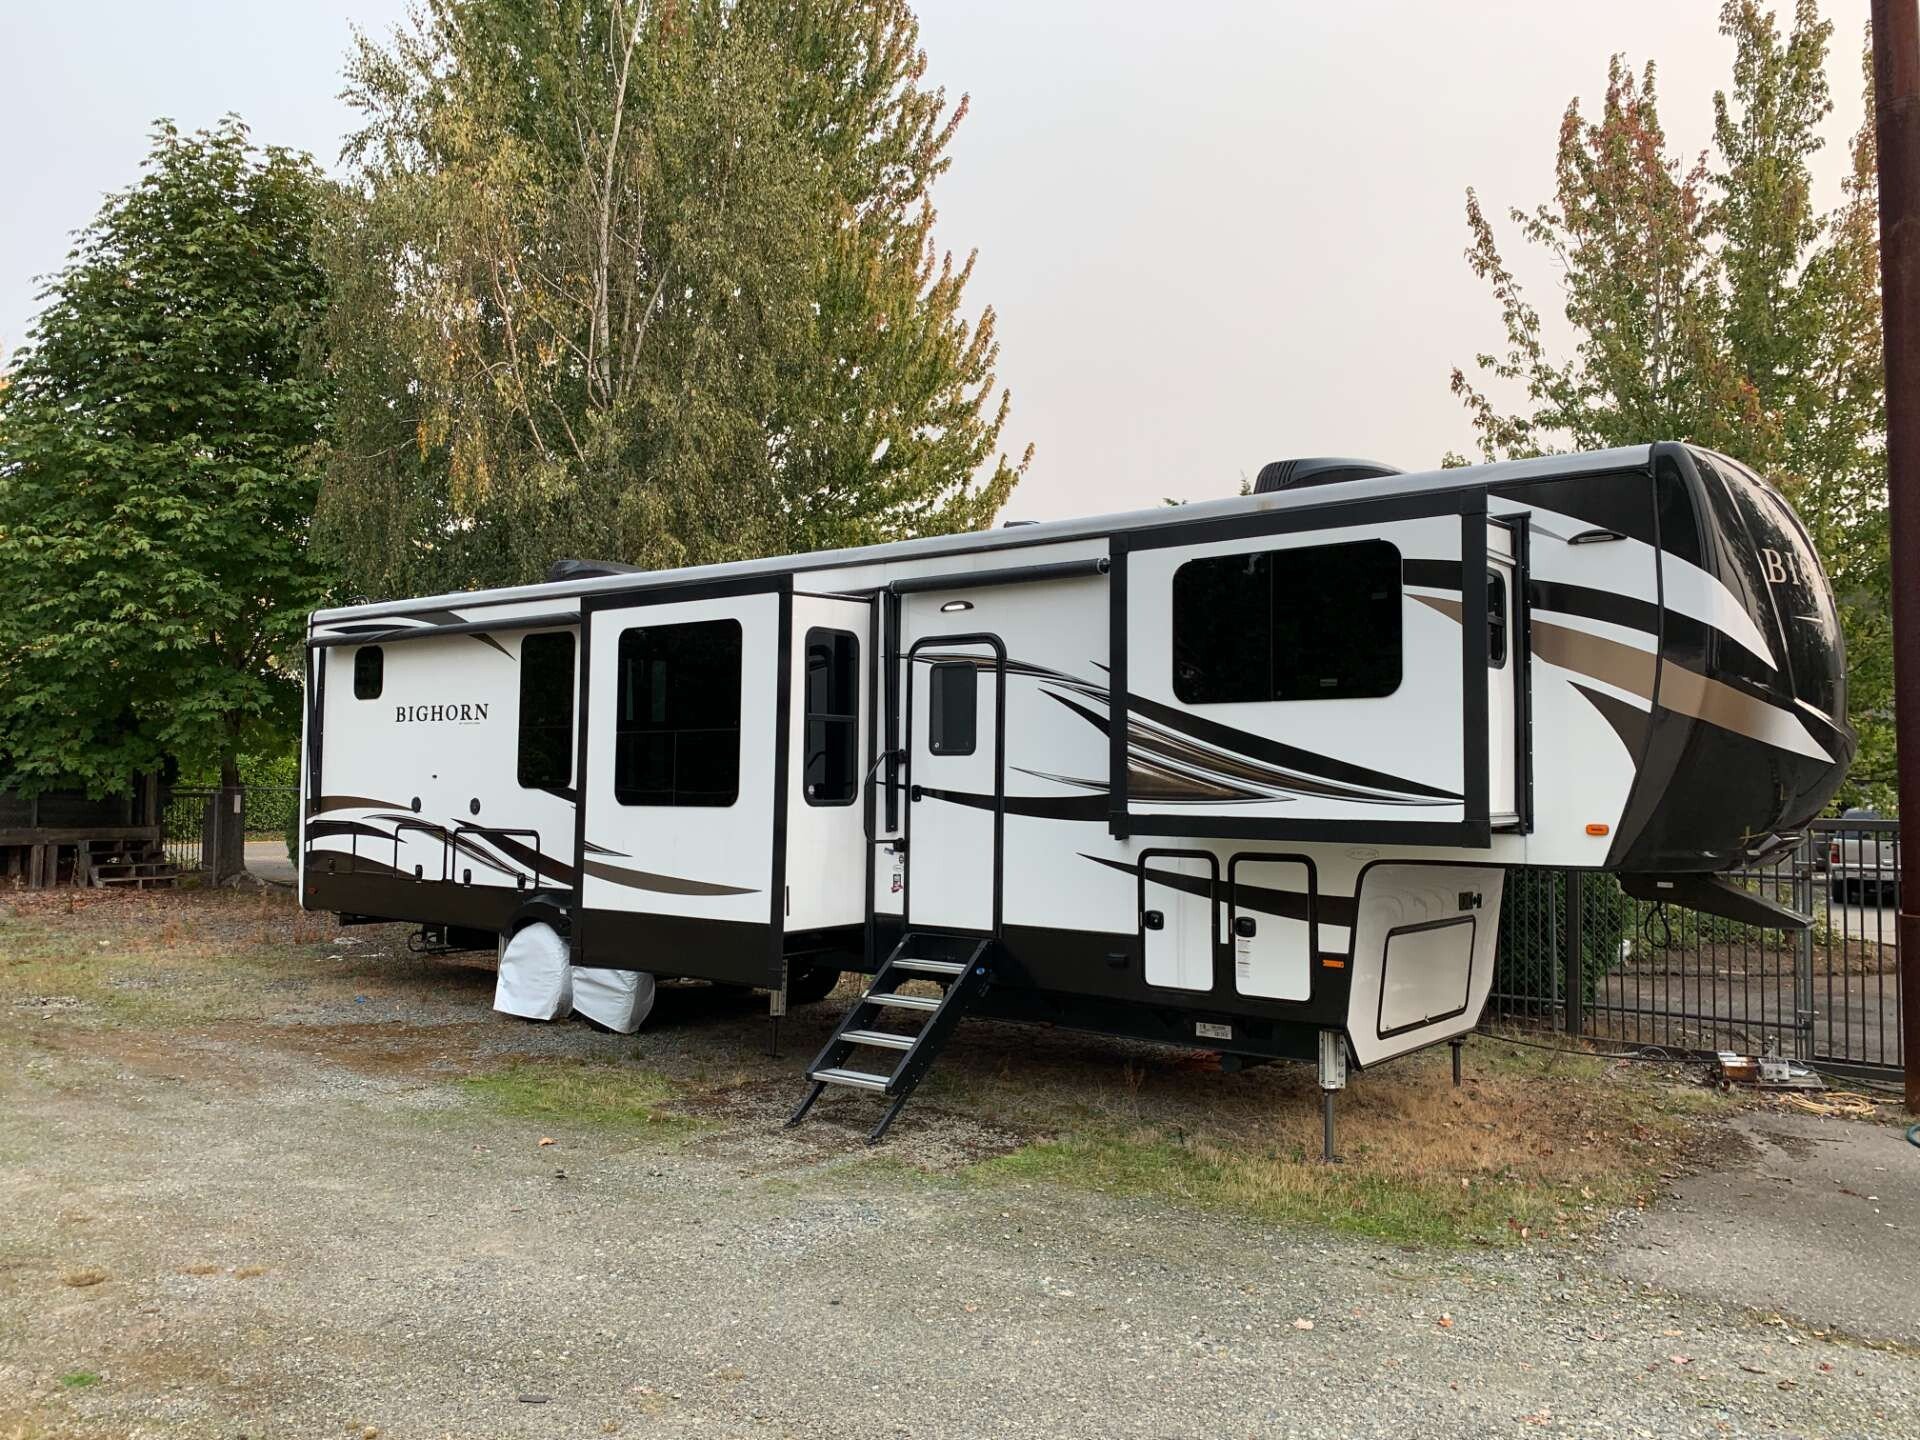 camper trailer for sale